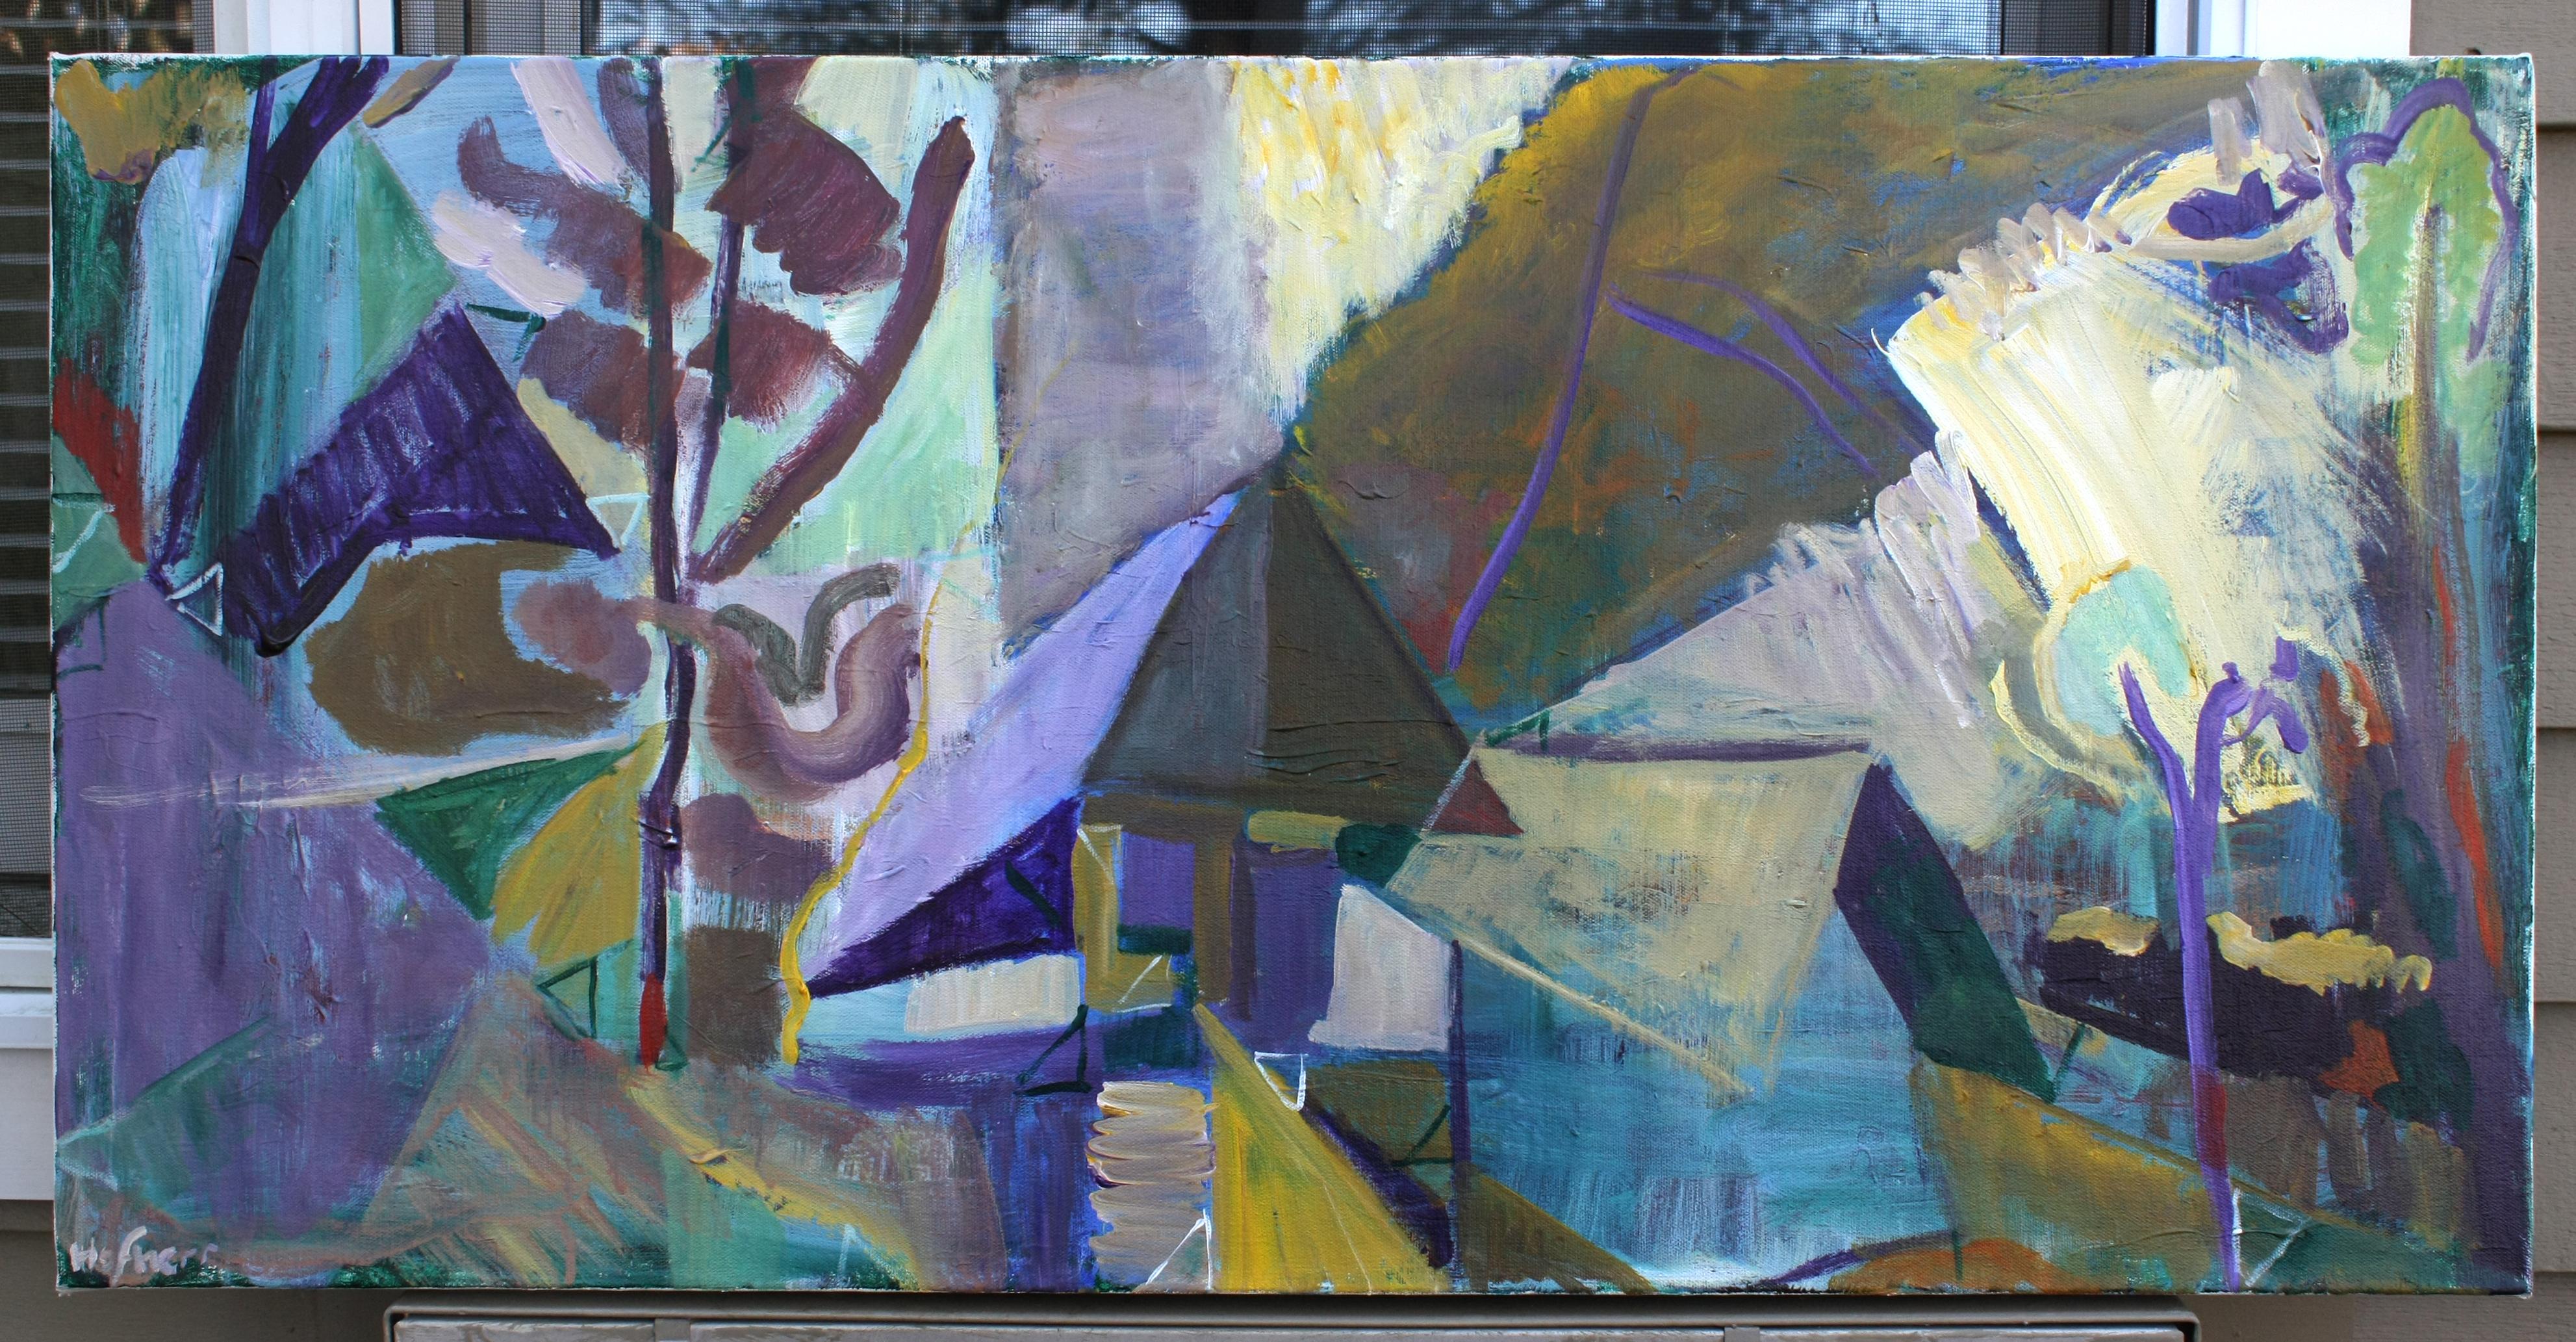 <p>Kommentare des KünstlersInspiriert von den Landschaften von Ivon Hitchens, werden in diesem Kunstwerk verschiedene Techniken eingesetzt, um die Realität zu verändern.<br> Offene und versteckte dreieckige Formen dominieren die Komposition und